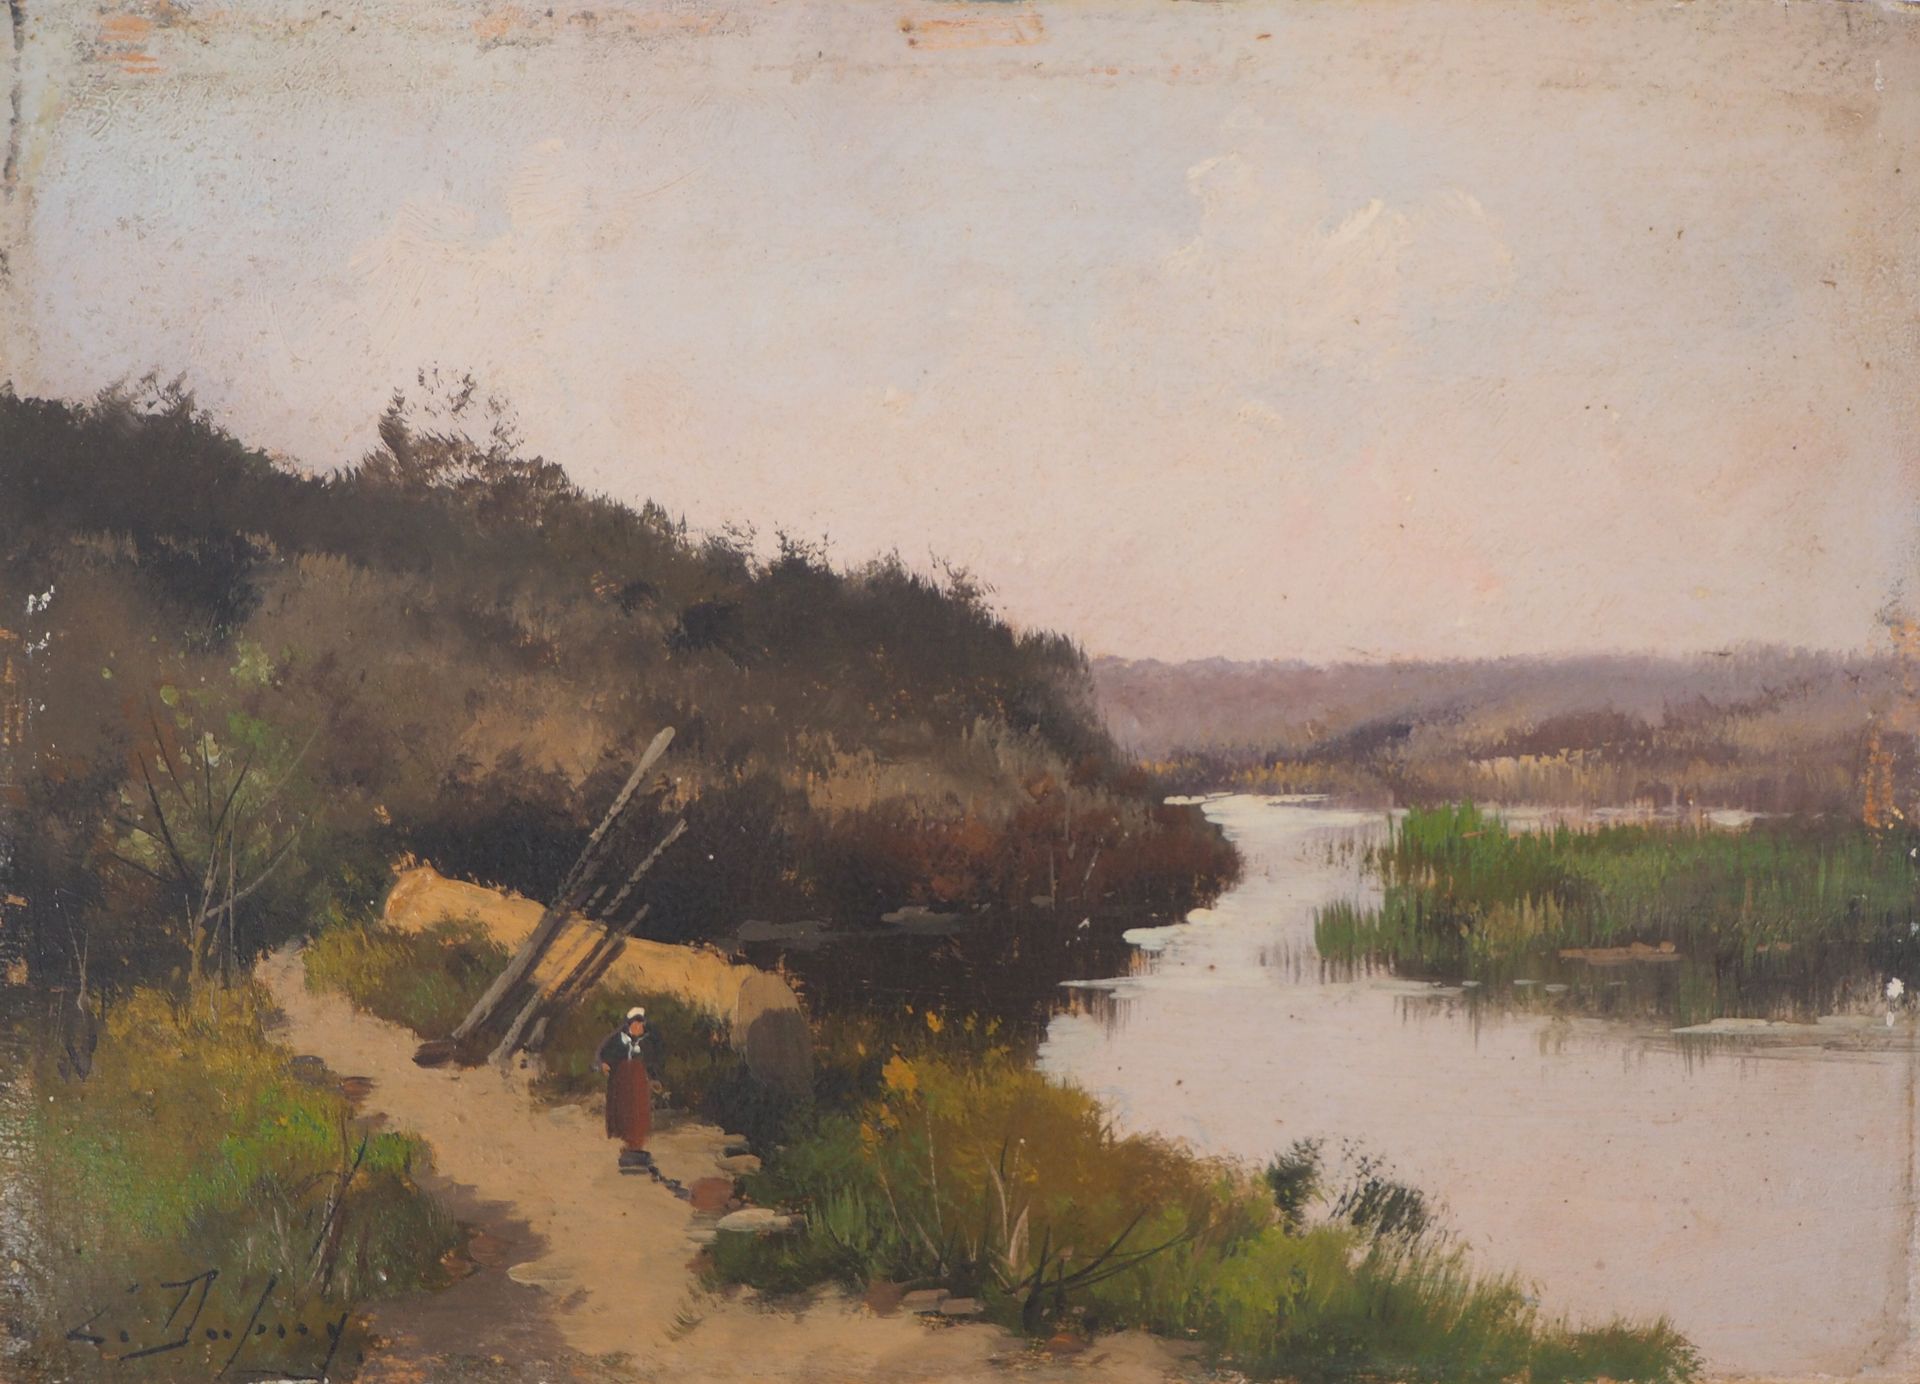 Eugène GALIEN-LALOUE Eugène Galien-Laloue (1854-1941)

Landwirt am Fluss

Öl auf&hellip;